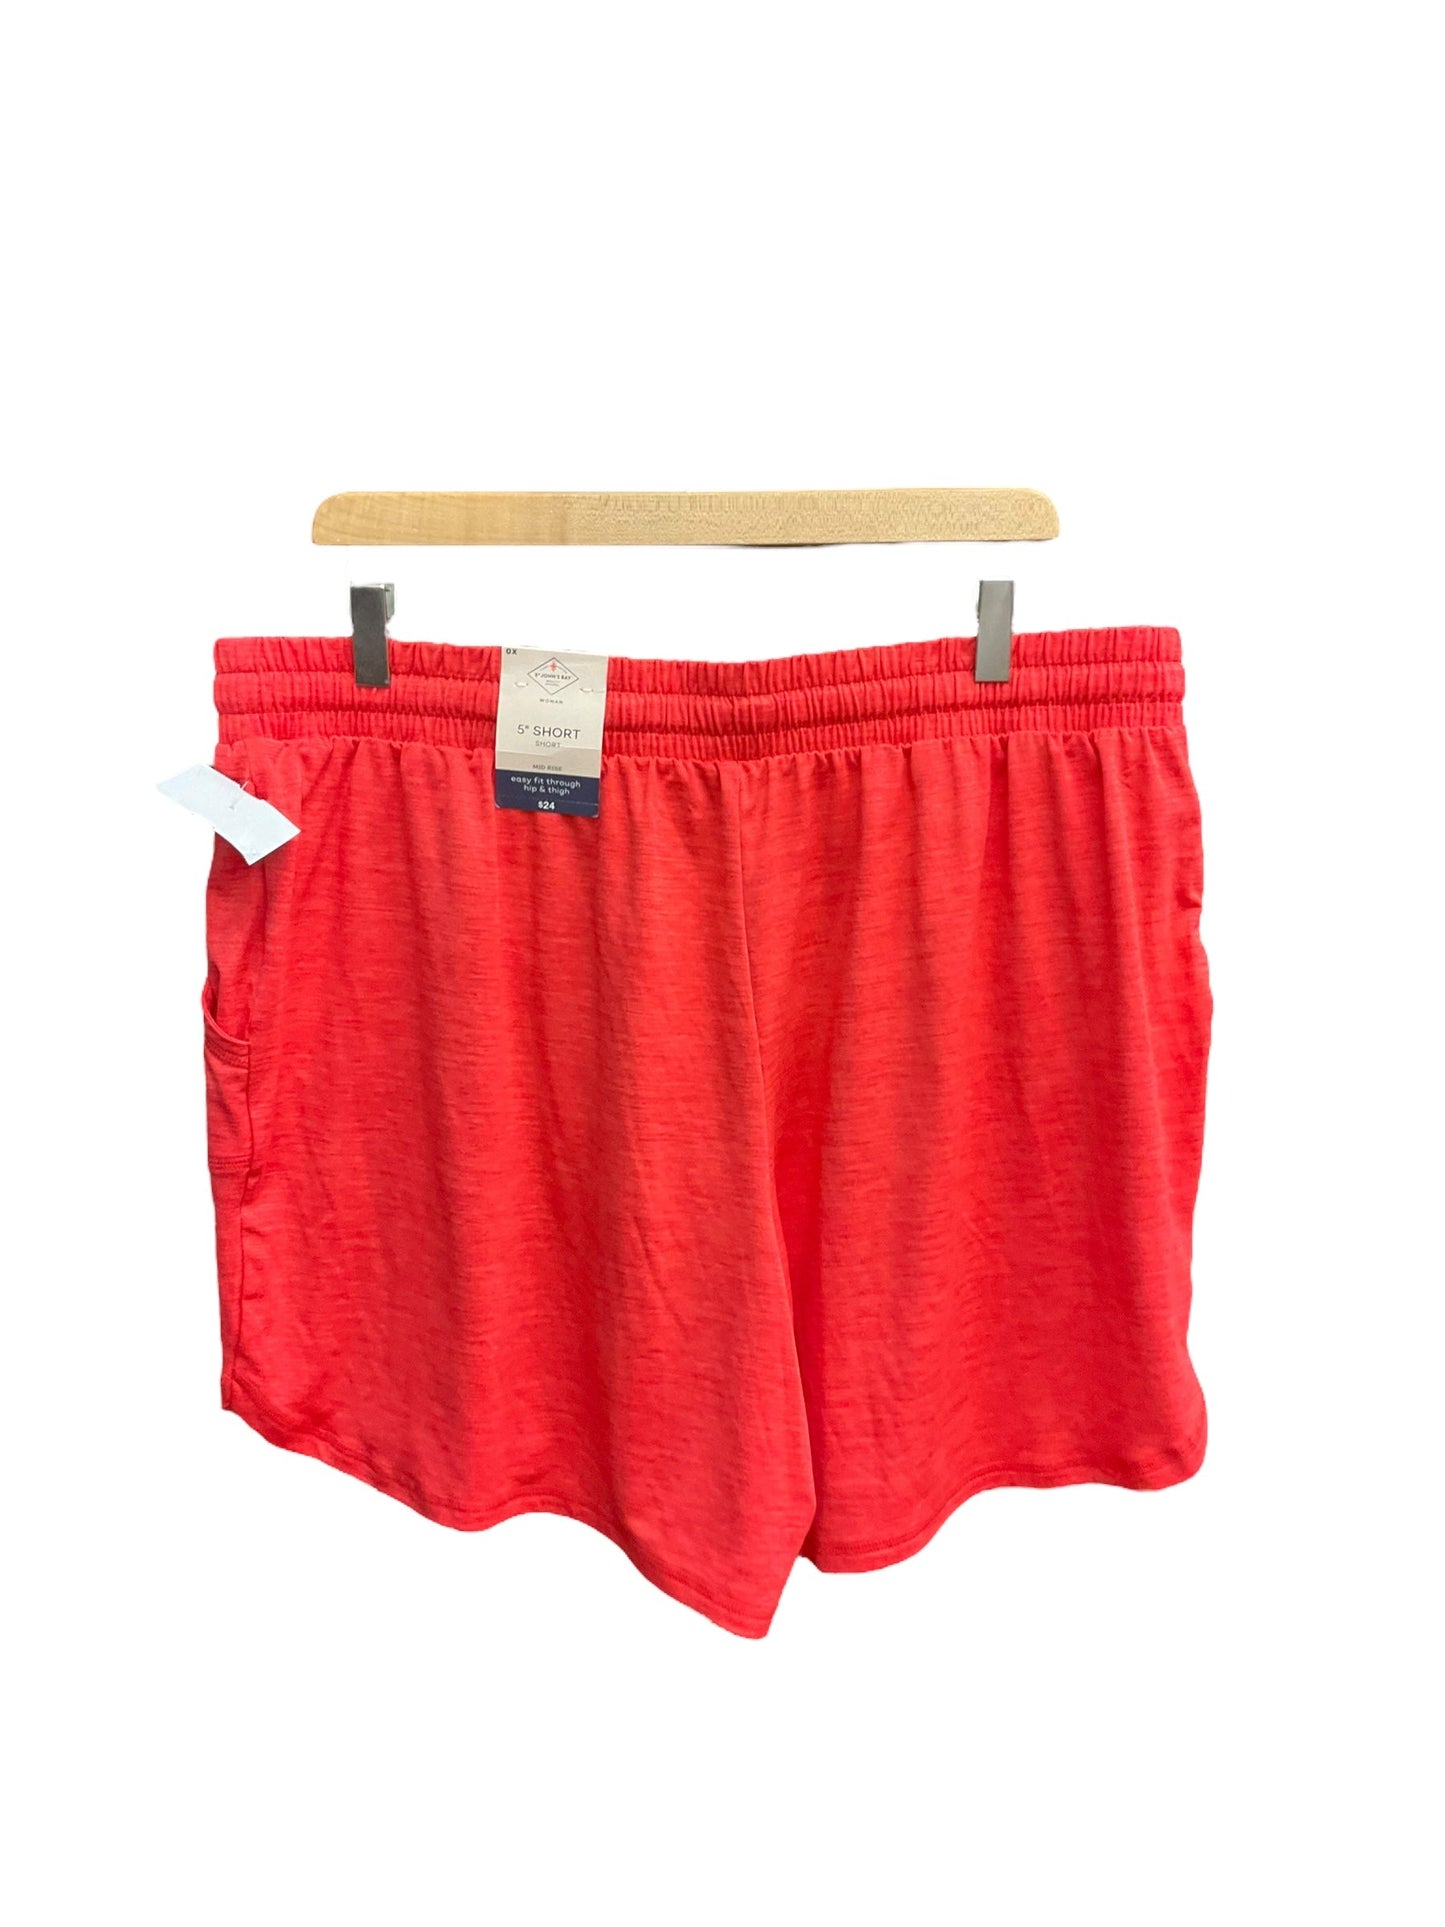 Orange Athletic Shorts St Johns Bay, Size Xl